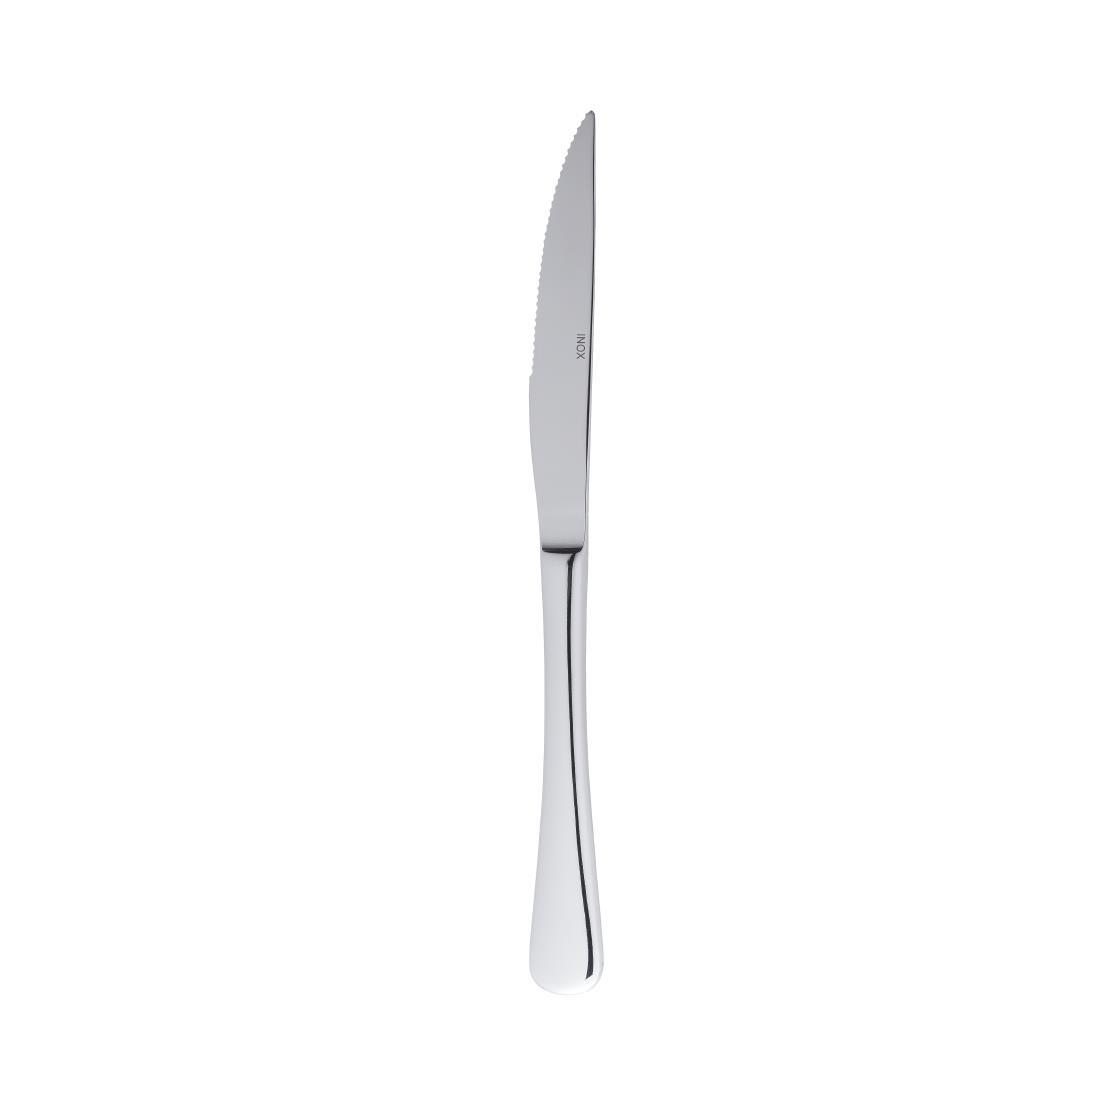 Abert Regis Steak Knives (Pack of 12) - GC652  - 2